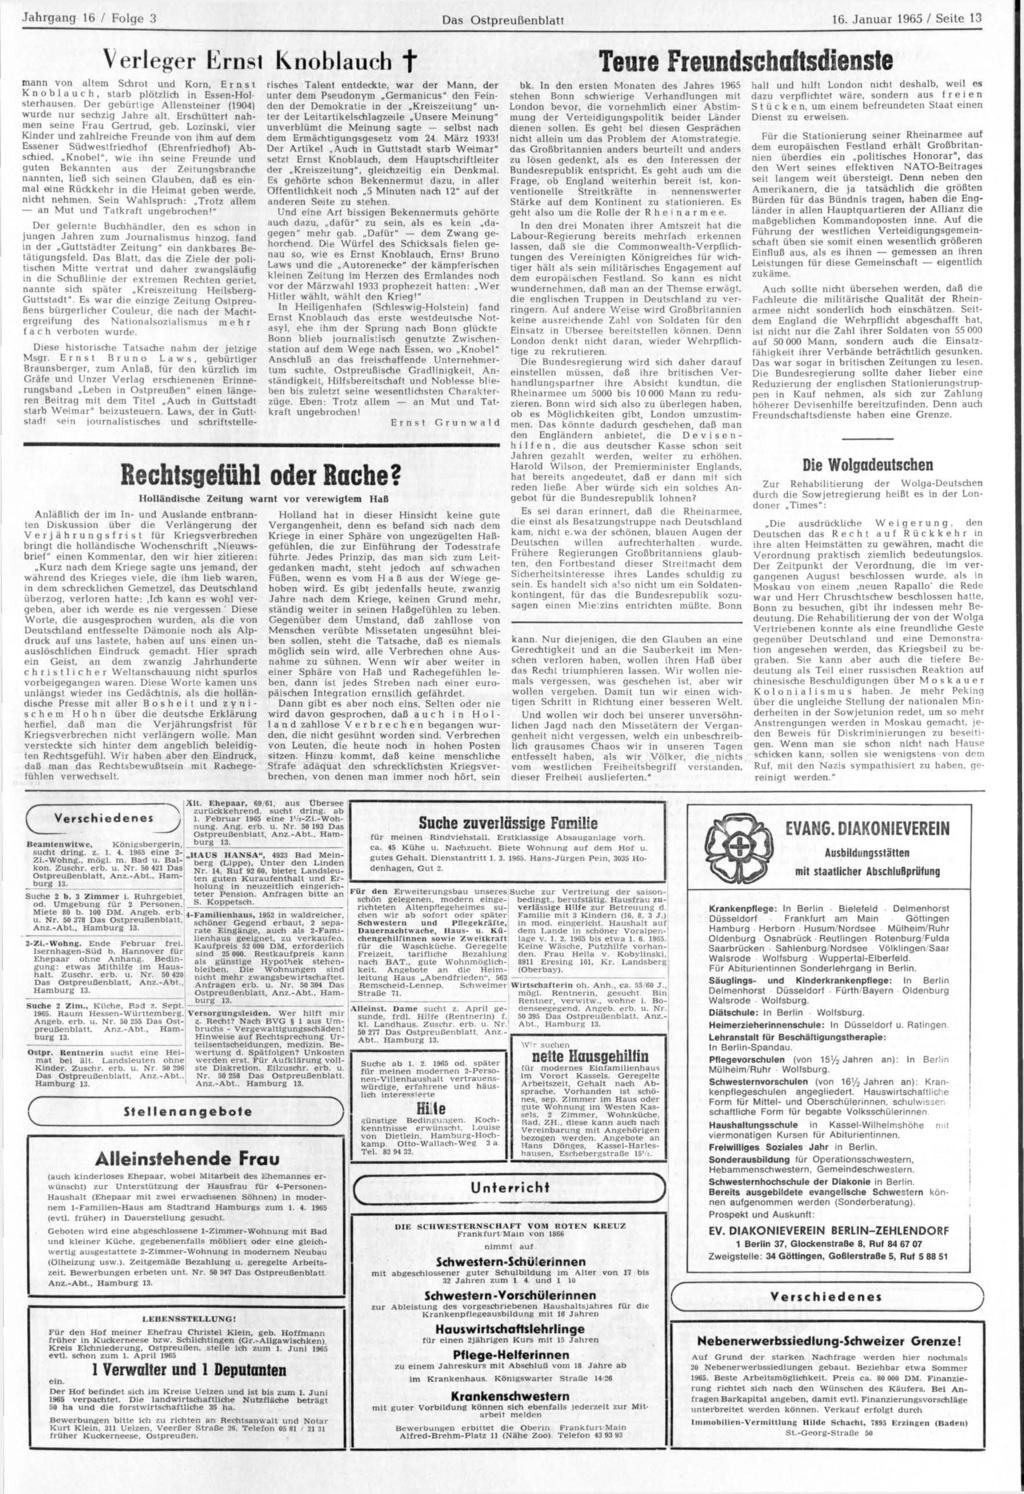 Jahrgang 16 / Folge 3 Das Ostpreußenblatt 16. Januar 1965 / Seite 13 Verleger Lernst Knoblauch f mann von altem Schrot und Korn, Ernst Knoblauch, starb plötzlich in Essen-Hol sterhausen.